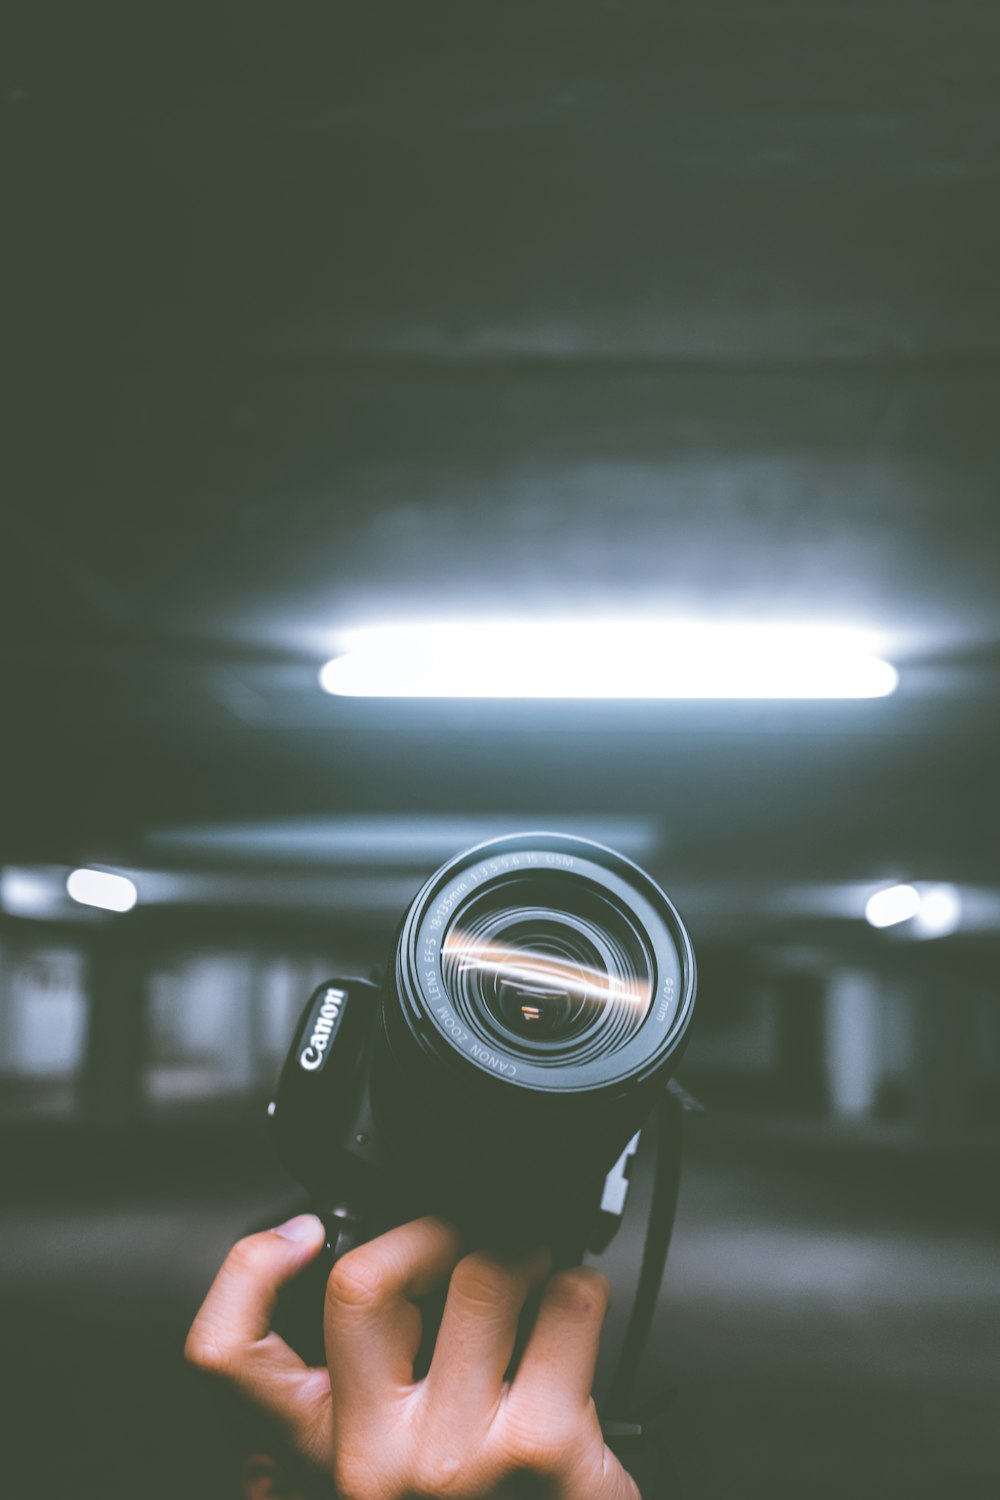 persona sosteniendo una cámara Canon DSLR negra dentro del garaje interior del vehículo